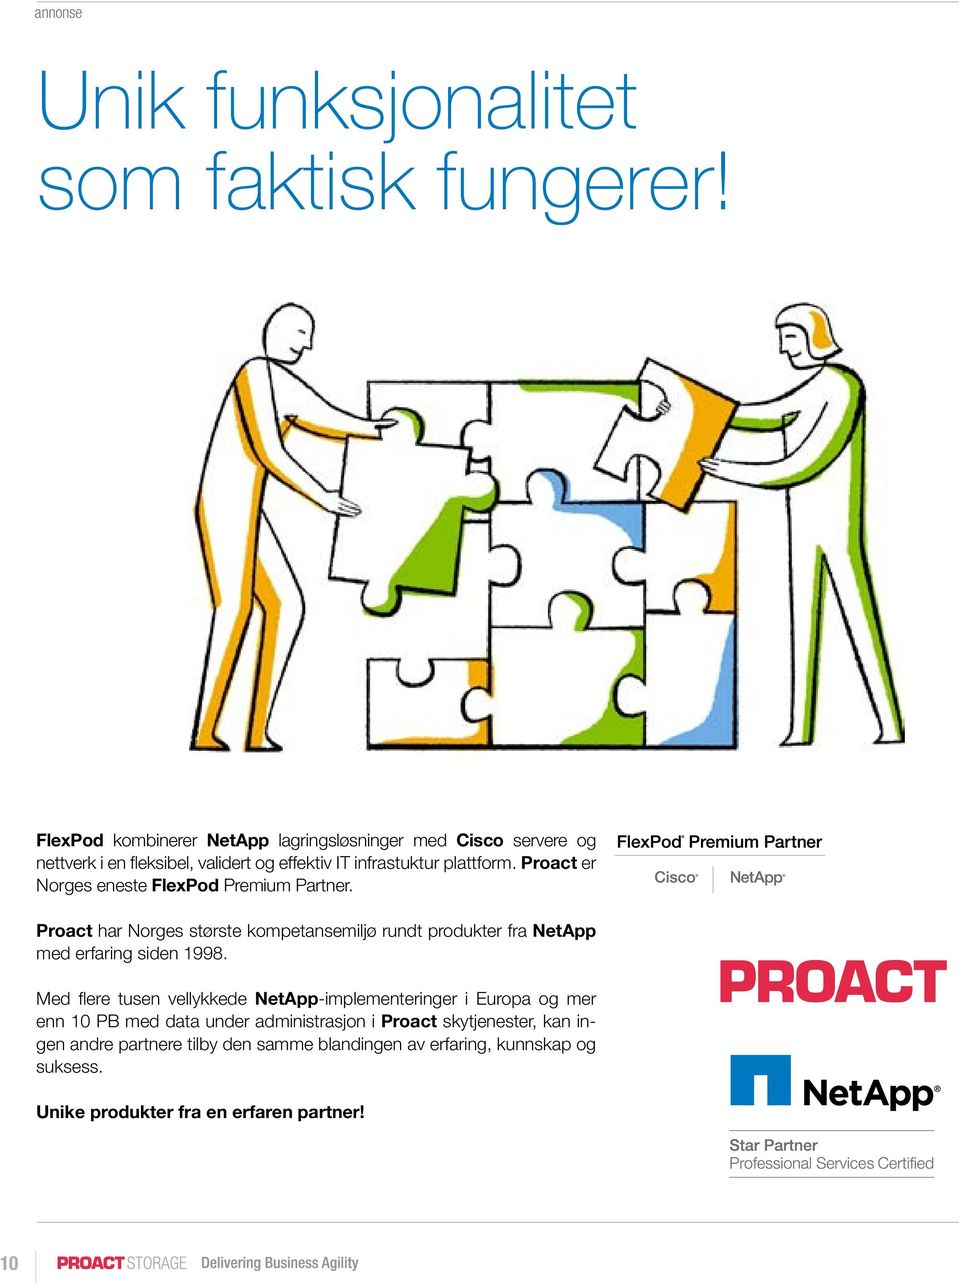 Proact er Norges eneste FlexPod Premium Partner. Proact har Norges største kompetansemiljø rundt produkter fra NetApp med erfaring siden 1998.